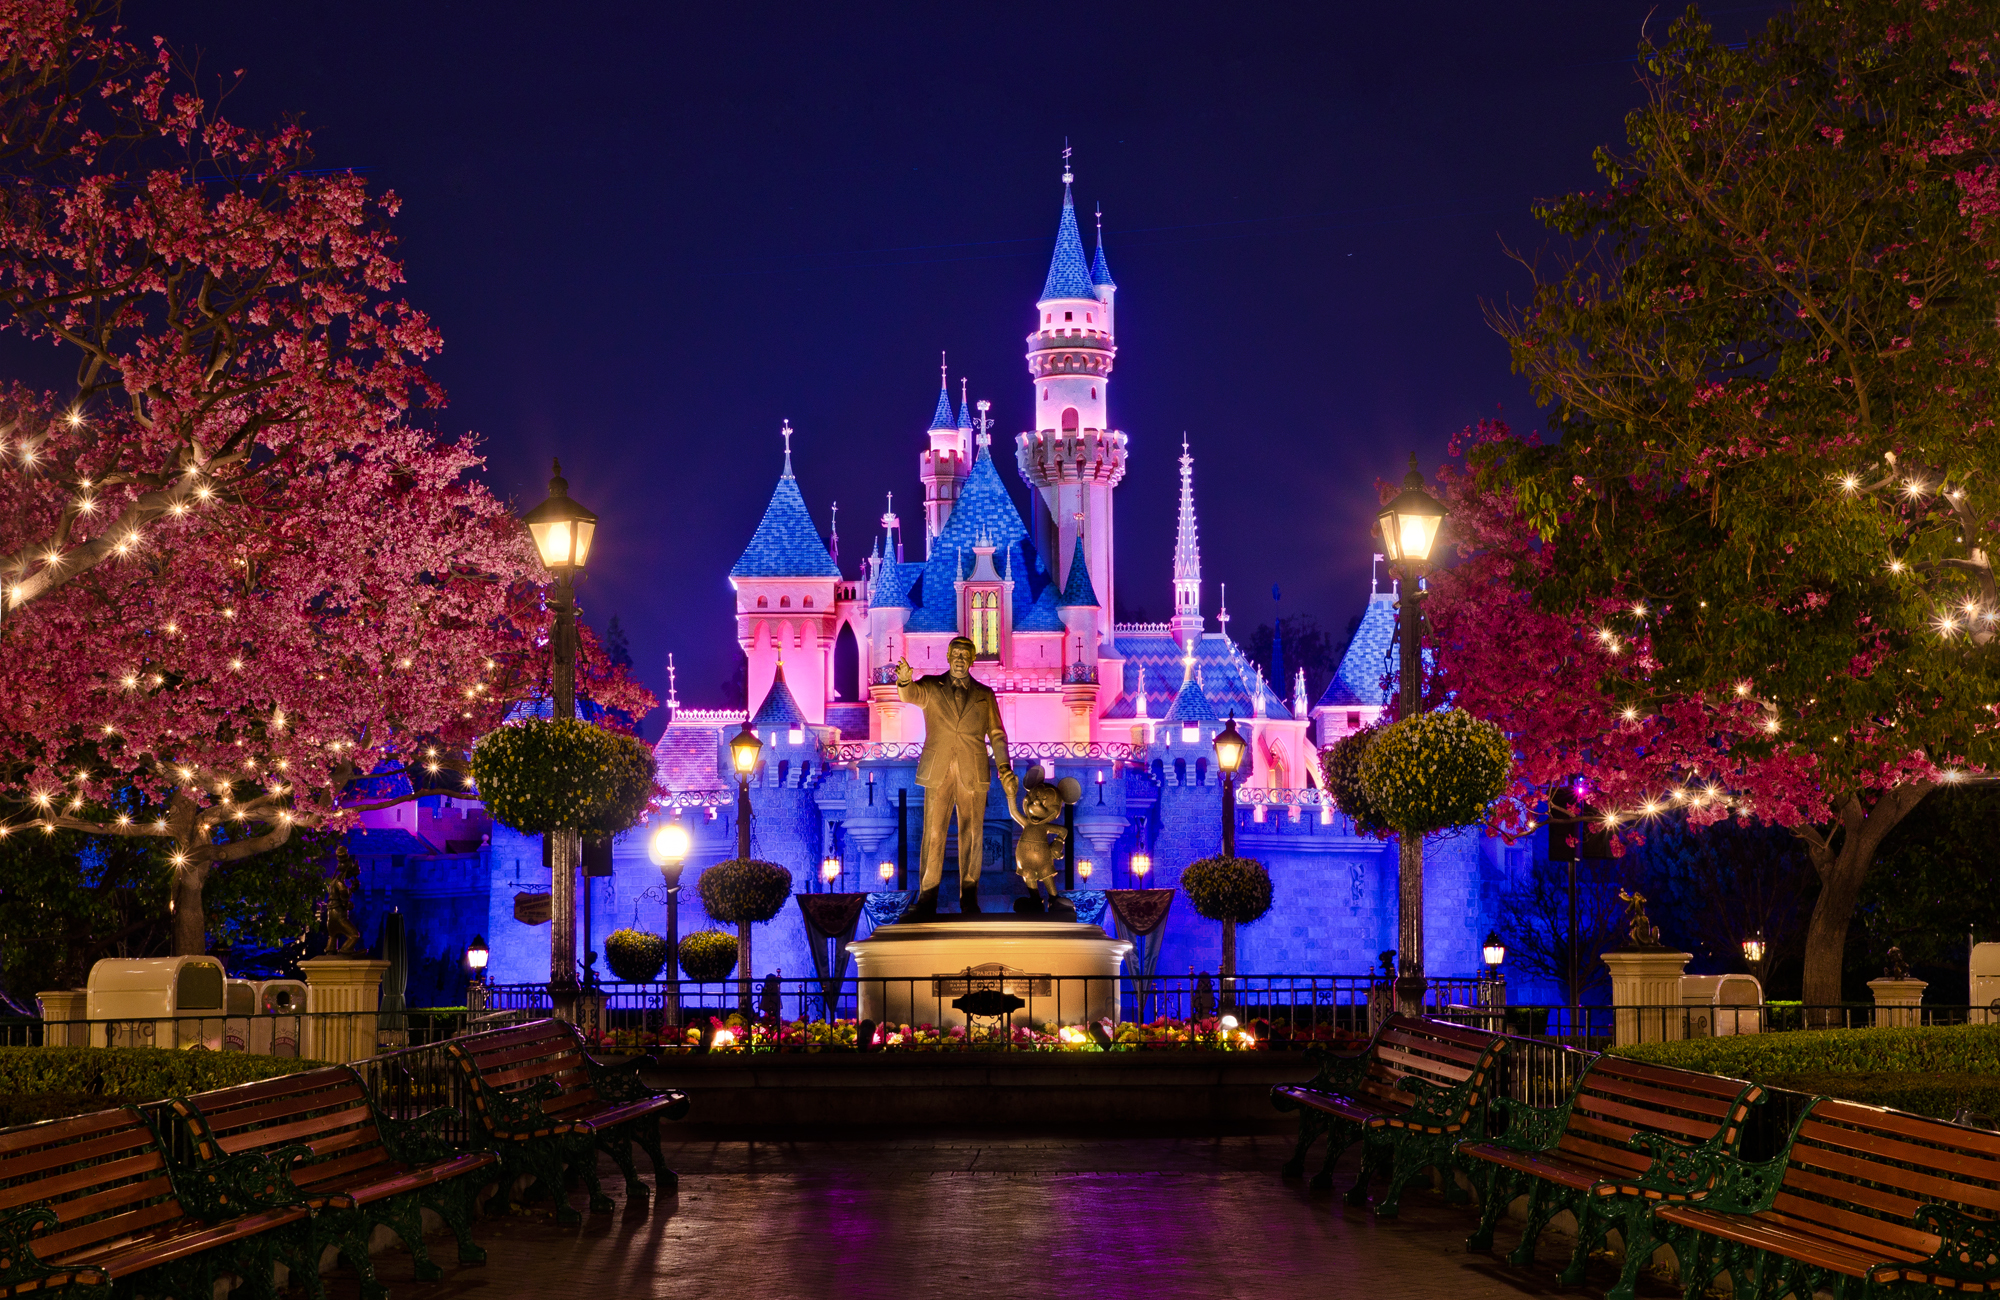 Disney castle wallpaper